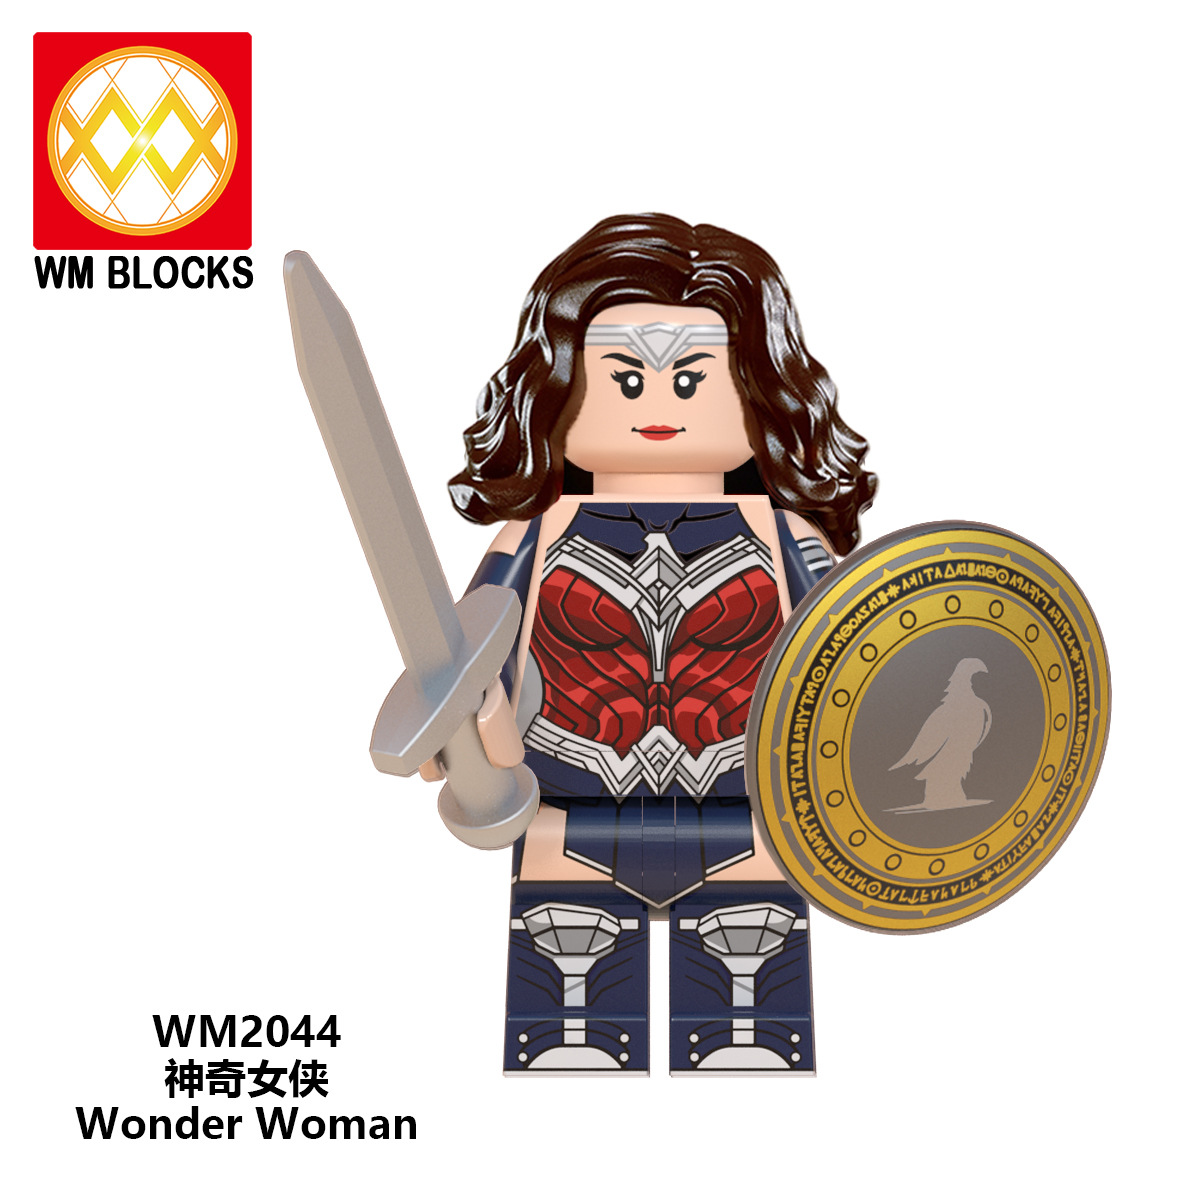 Khối lắp ráp lego mô hình Wonder Woman Wm6100 độc đáo